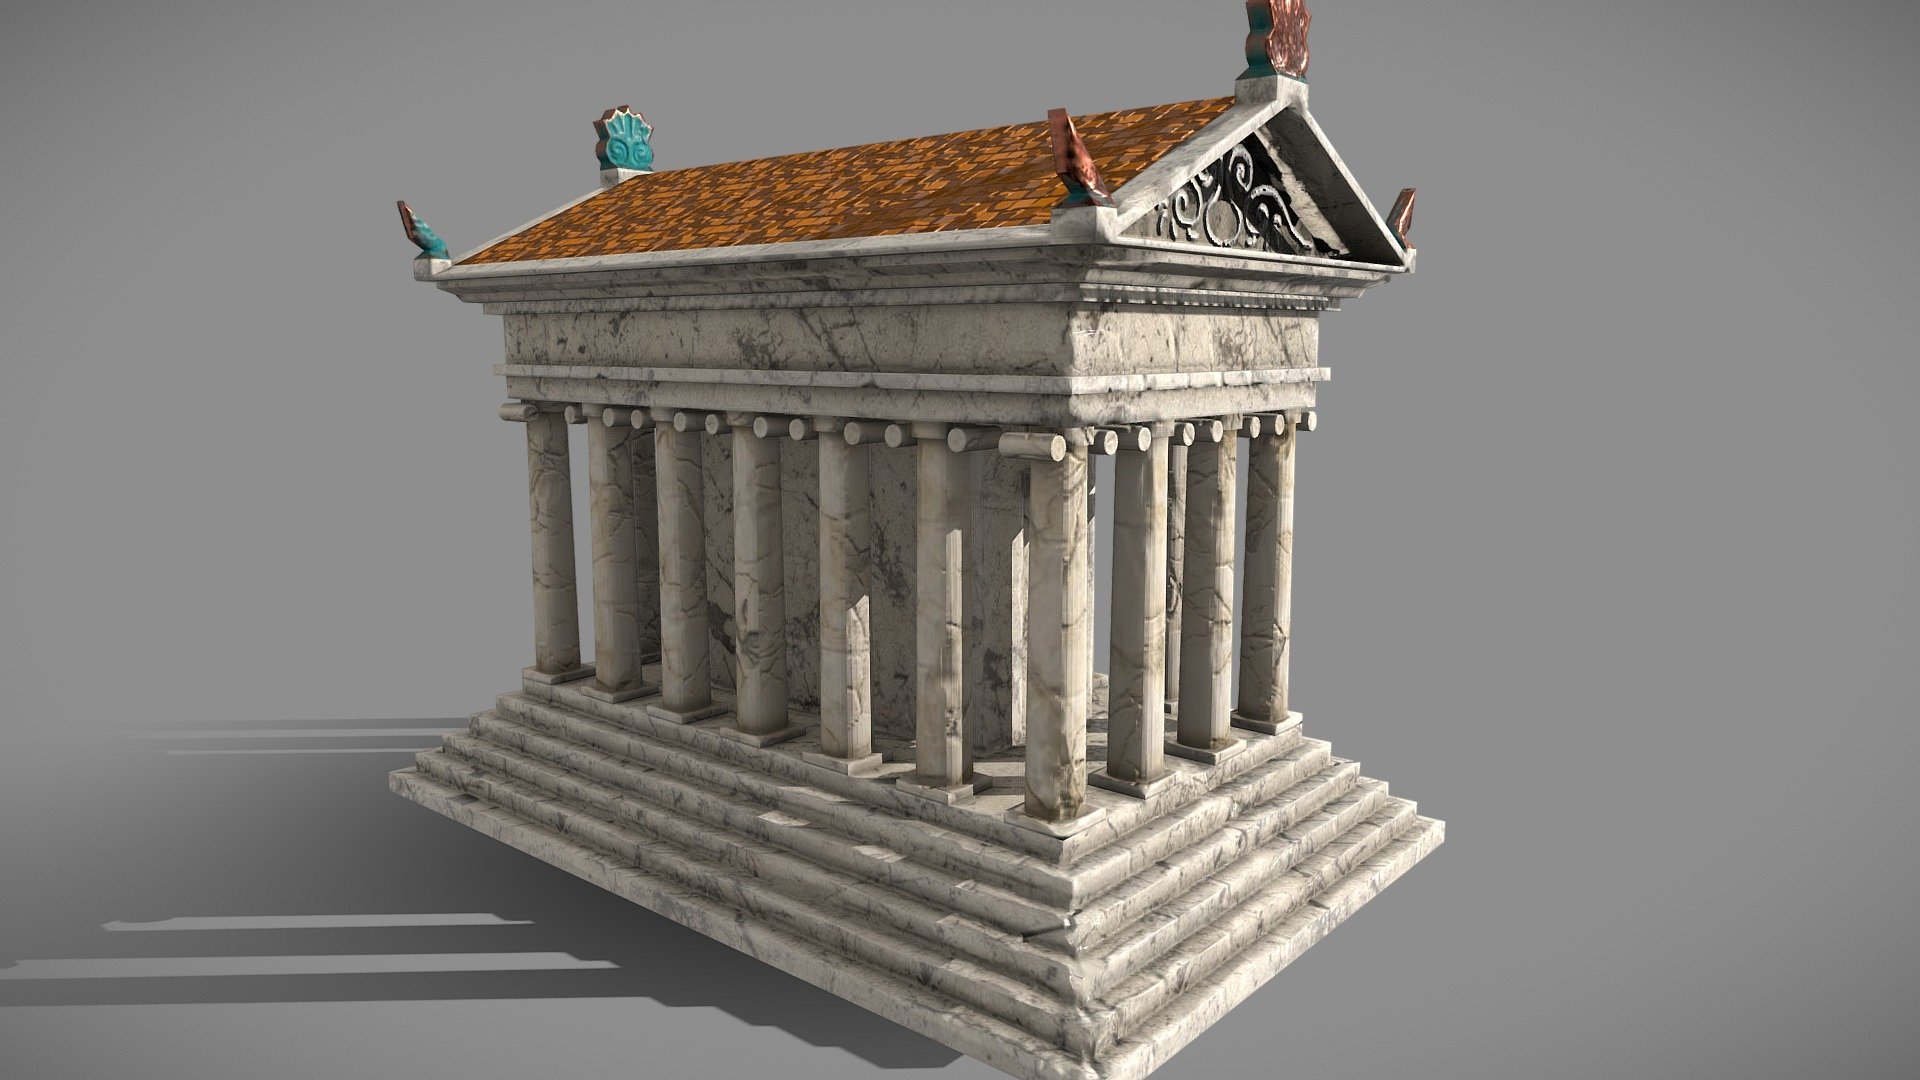 Roman Greco temple aged - Roman Greco Temple Aged - Download Free 3D model by mdsz13 (@shaz13) 3d model